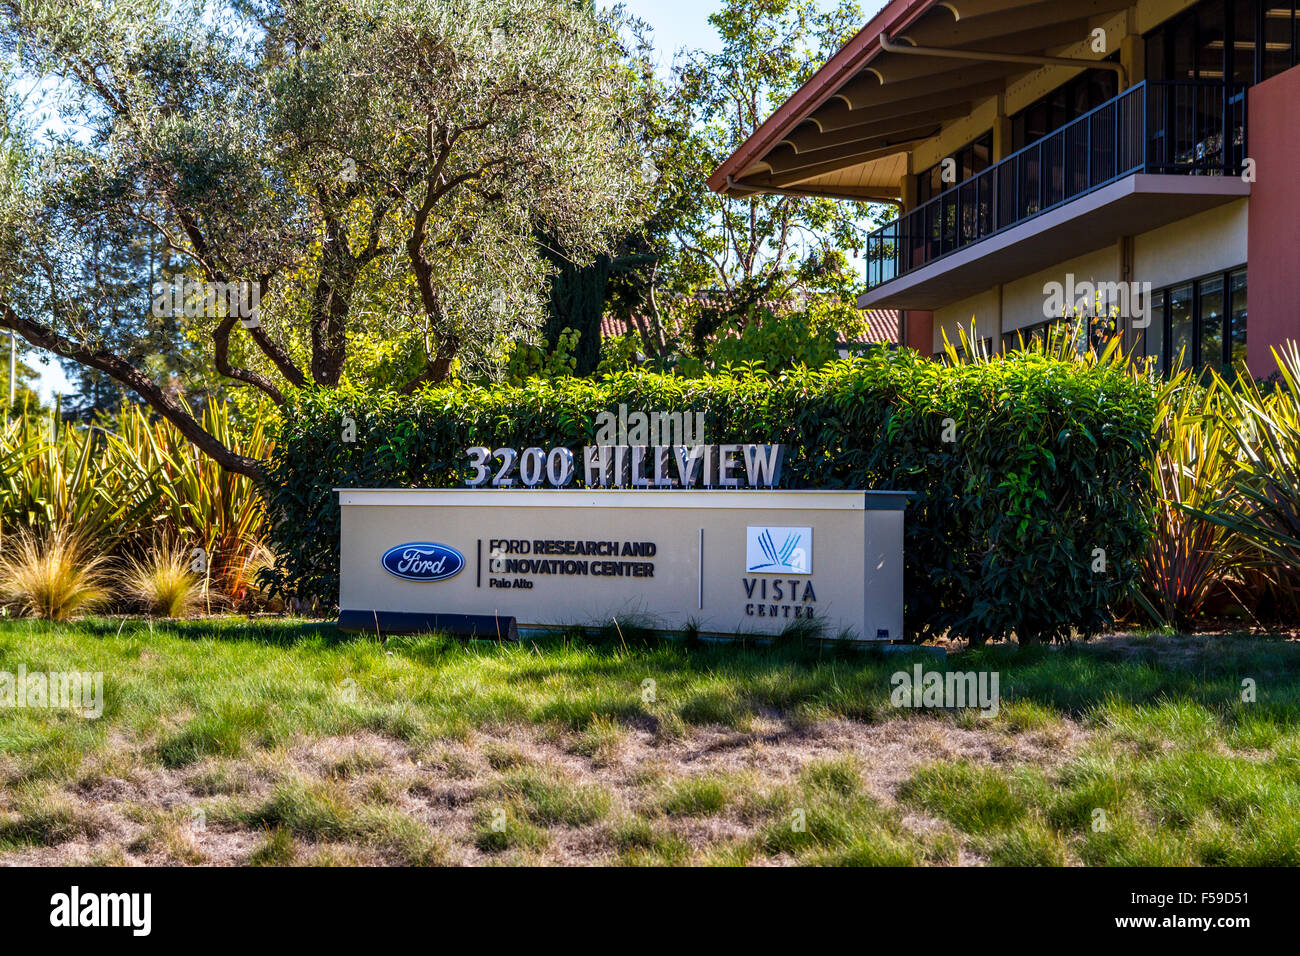 Ford Forschung und Innovation Center in Palo Alto in Kalifornien Stockfoto